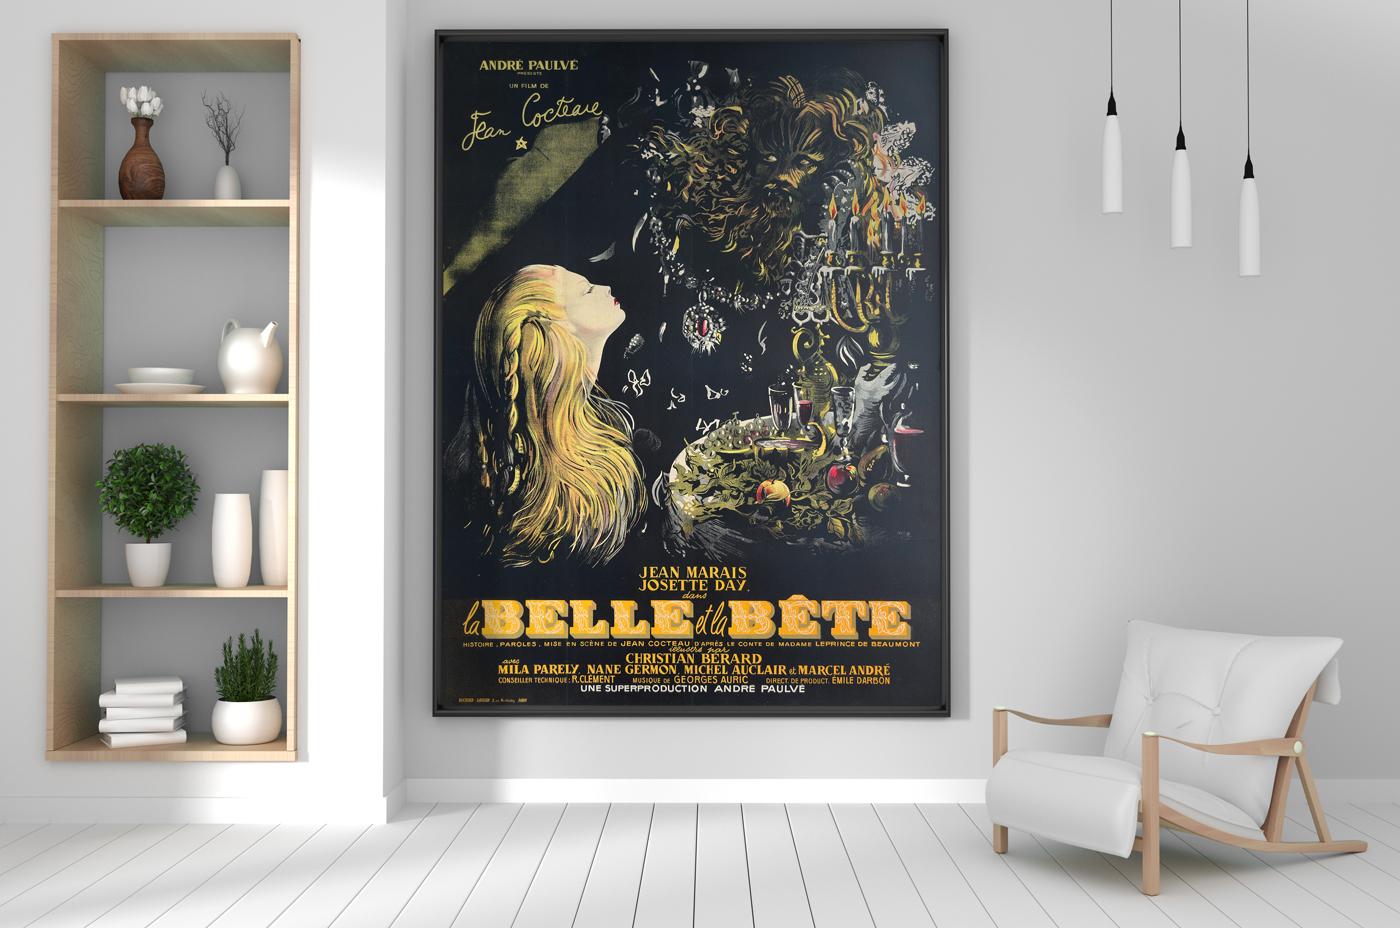 Cette réédition anticipée est accompagnée d'une illustration d'une beauté inouïe.

Beauty and the Beast - La Belle et la Bête est un film fantastique romantique français de 1946. Réalisé par le poète et cinéaste français Jean Cocteau. Avec Josette